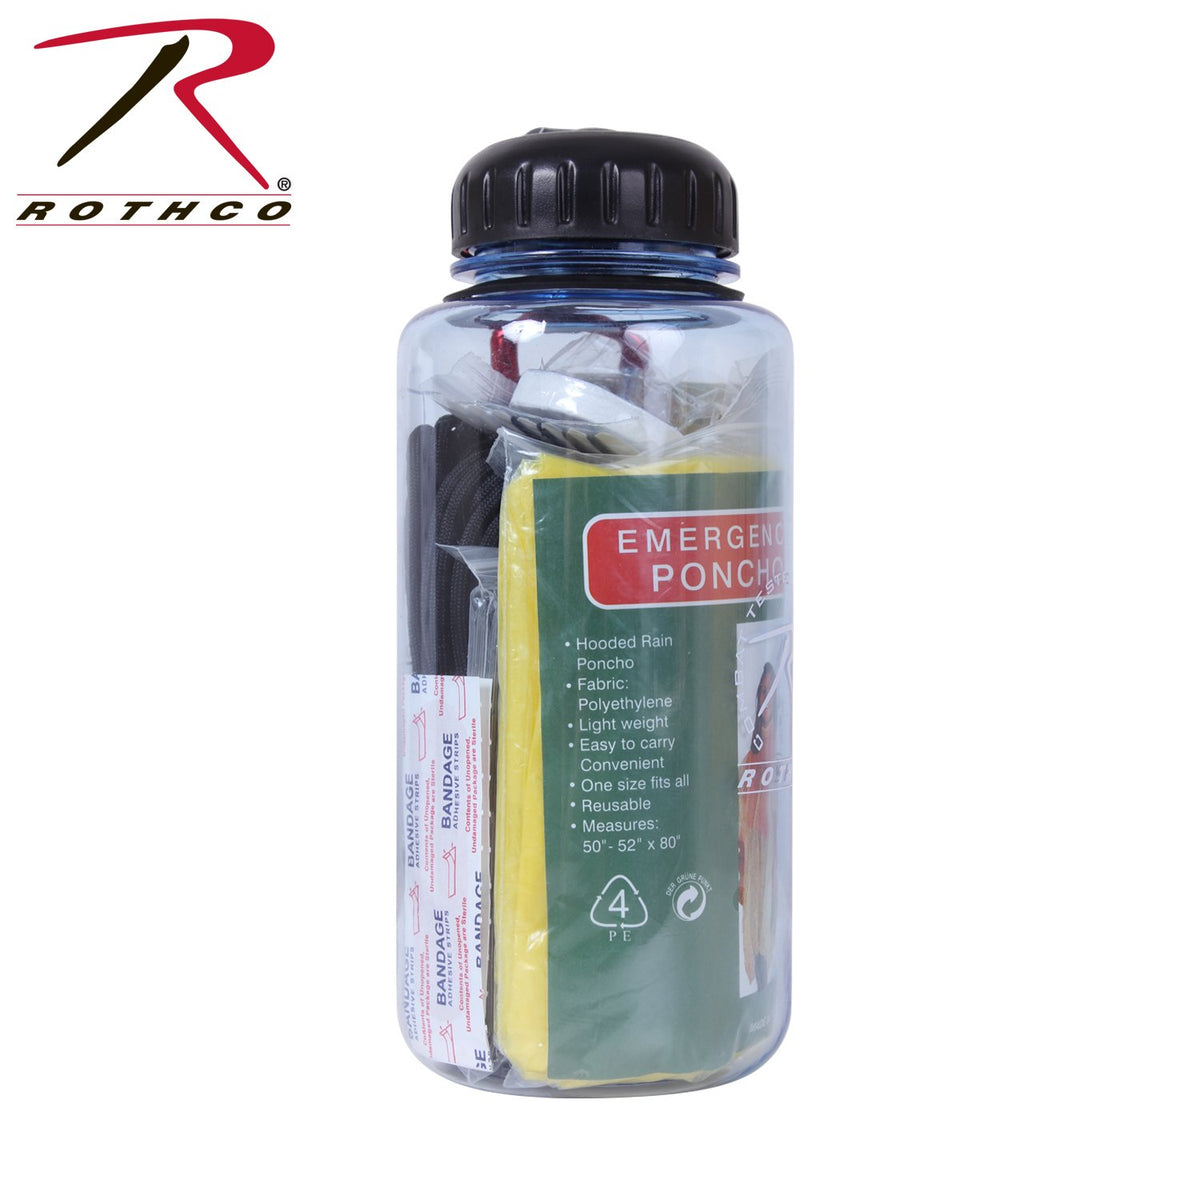 Rothco Water Bottle Survival Kit – European Prepper